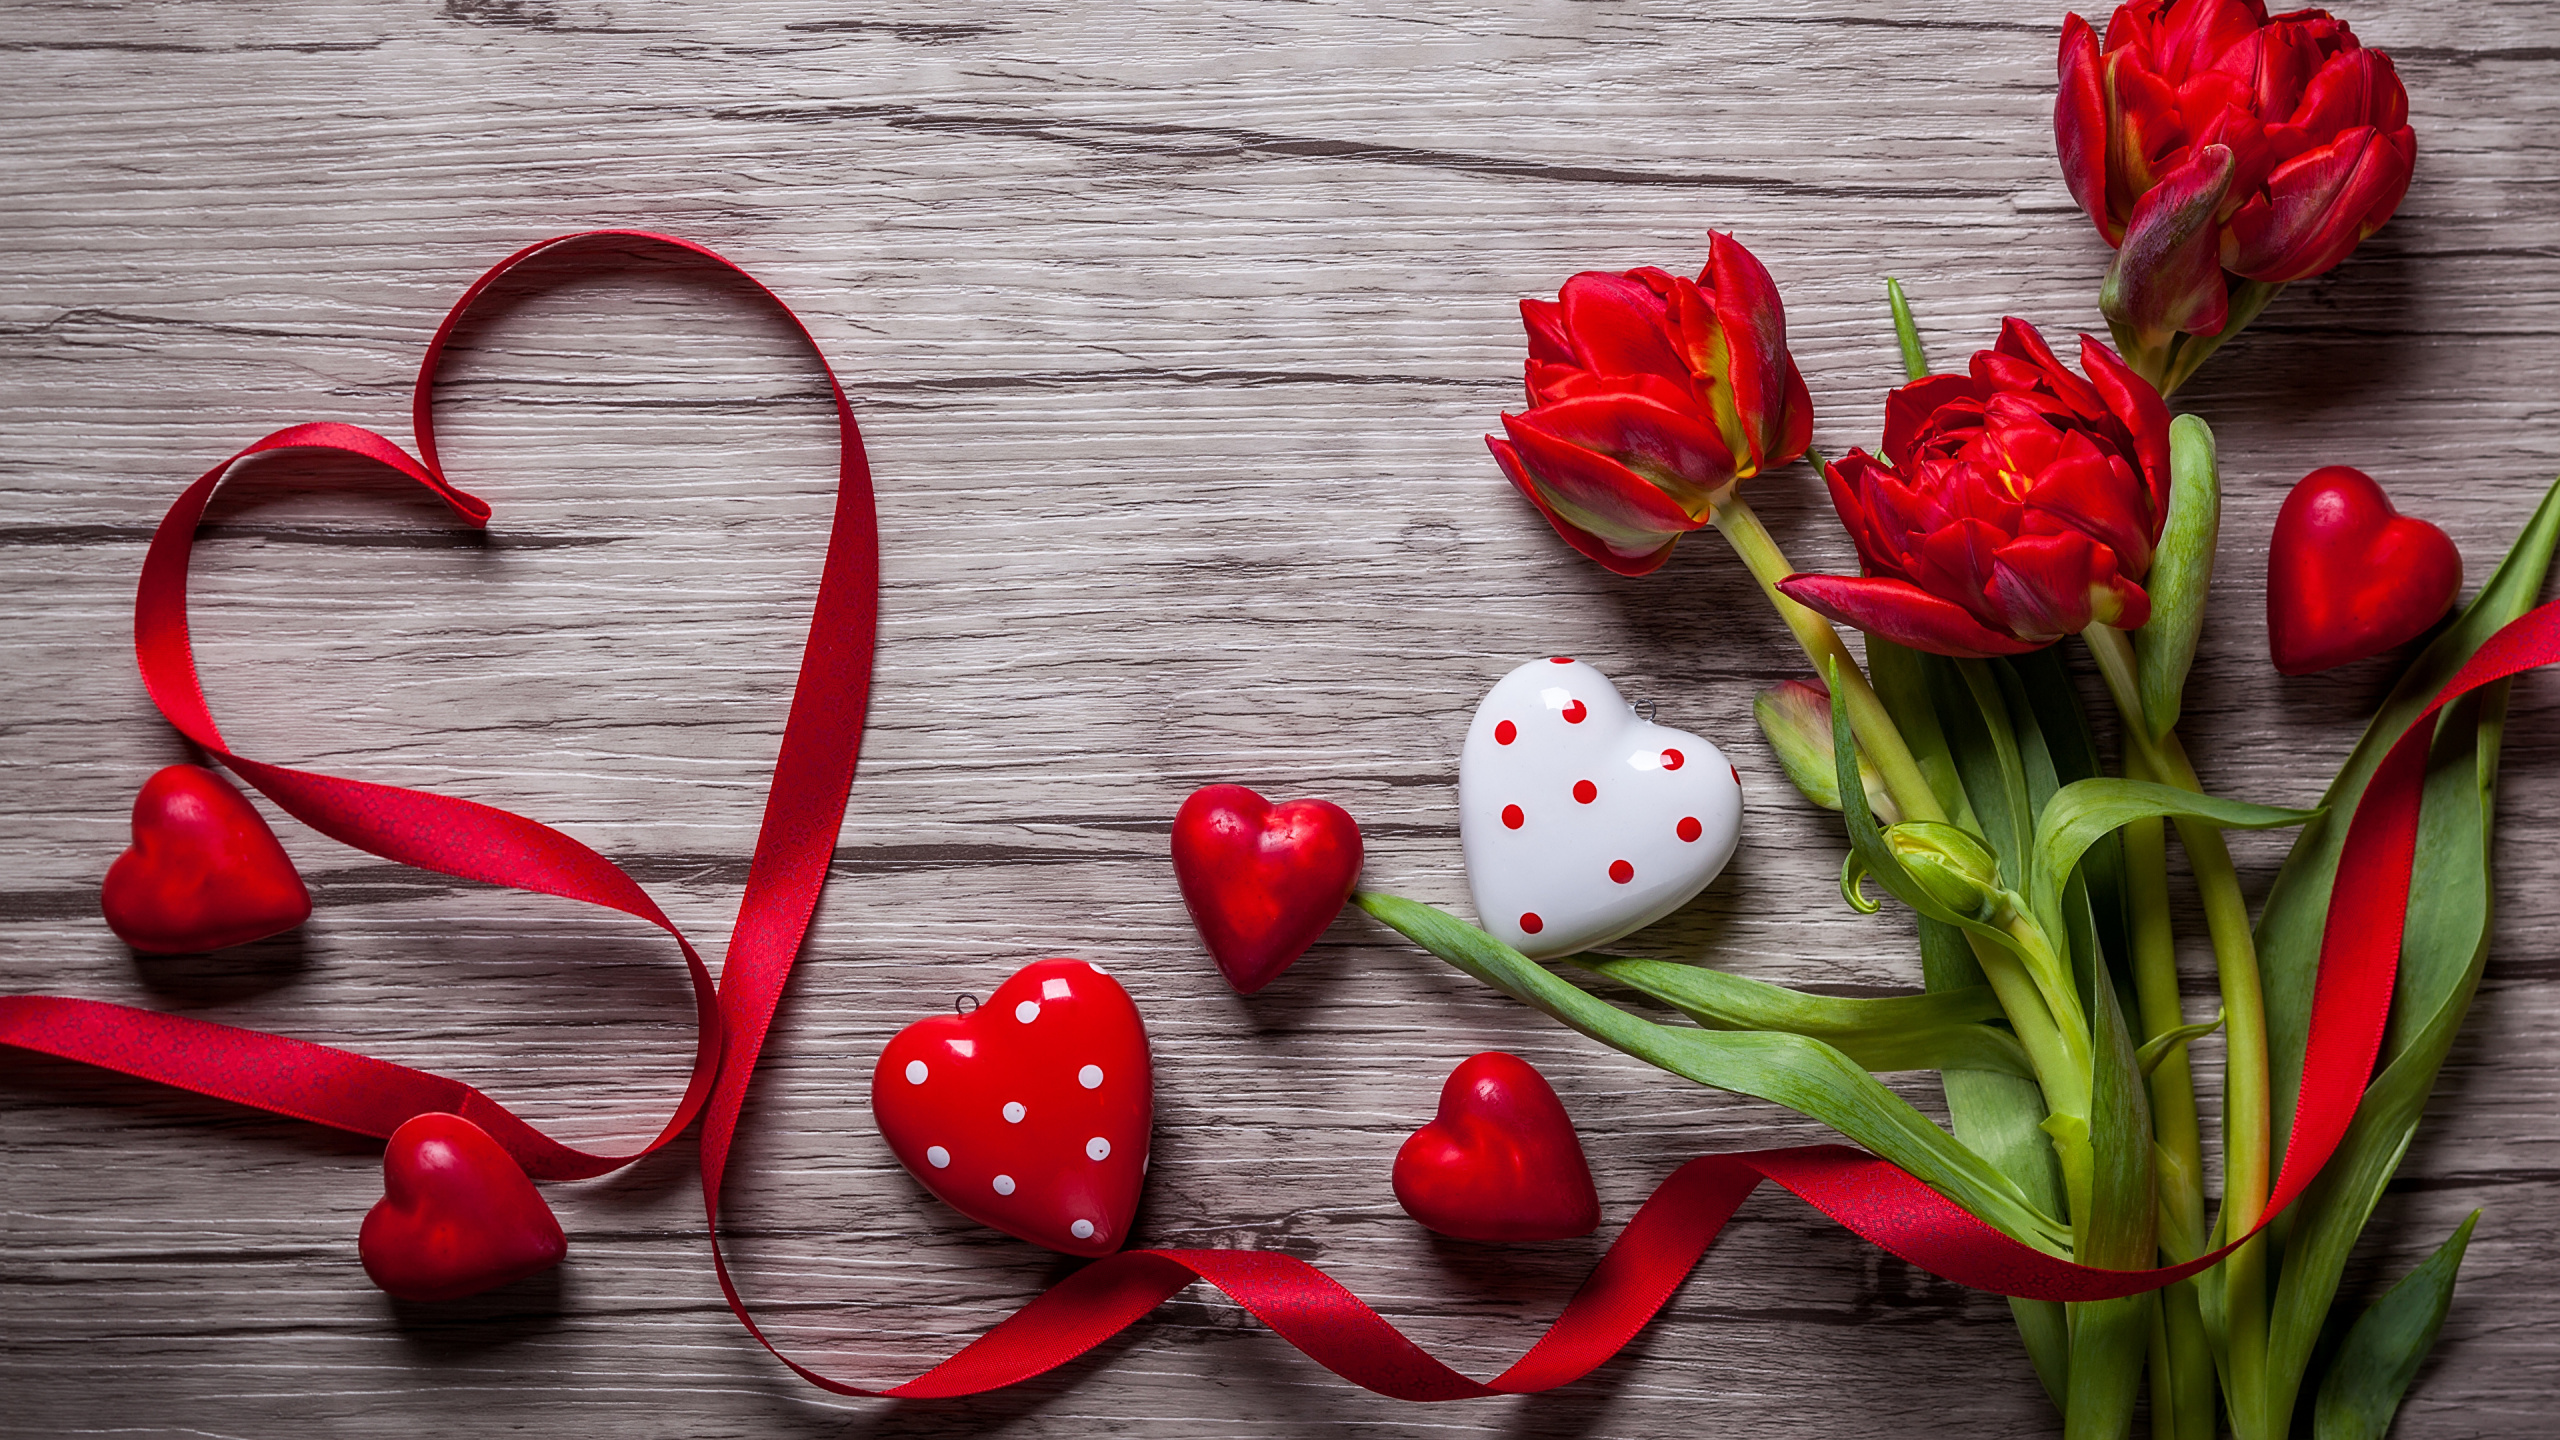 心脏, 红色的, 爱情, 花艺, 显花植物 壁纸 2560x1440 允许